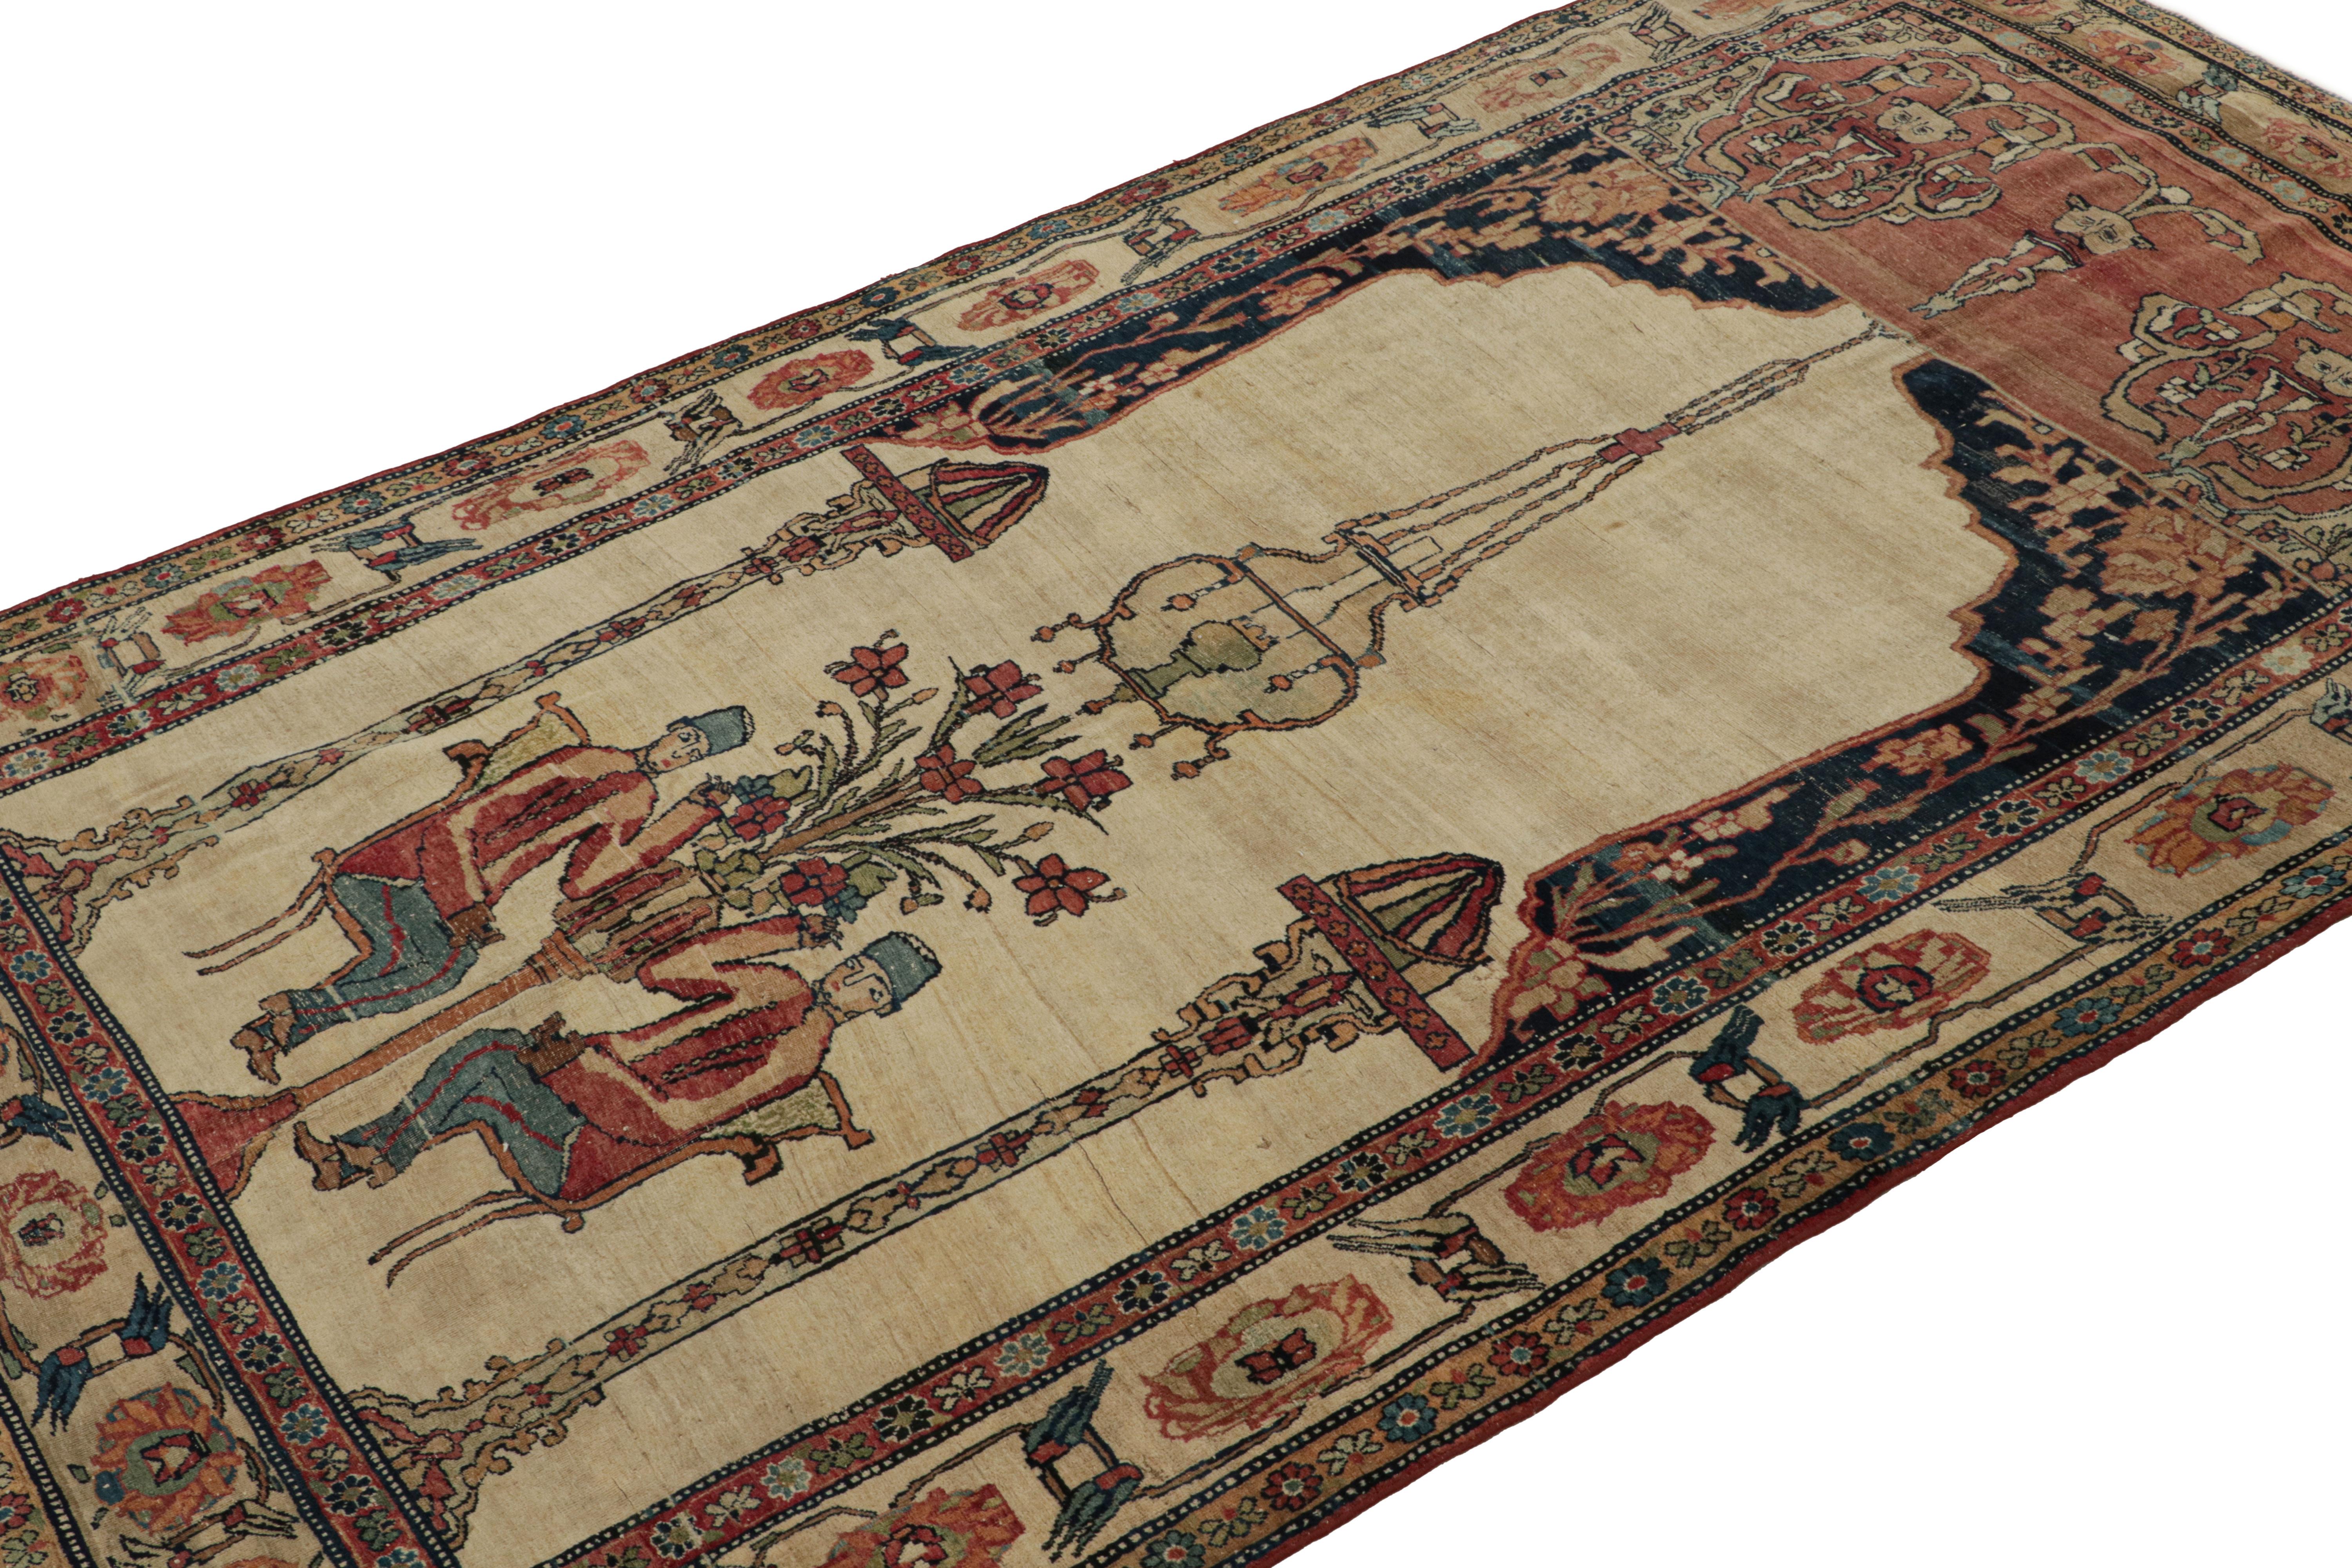 Dieser handgeknüpfte Wollteppich (ca. 1910-1920) in der Größe 5x8 ist ein ganz besonderes antikes Stück aus dem persischen Kerman Lavar mit malerischen Mustern.  

Über das Design: 

Dieses archaische Kunstwerk mit dem Charme der alten Welt basiert